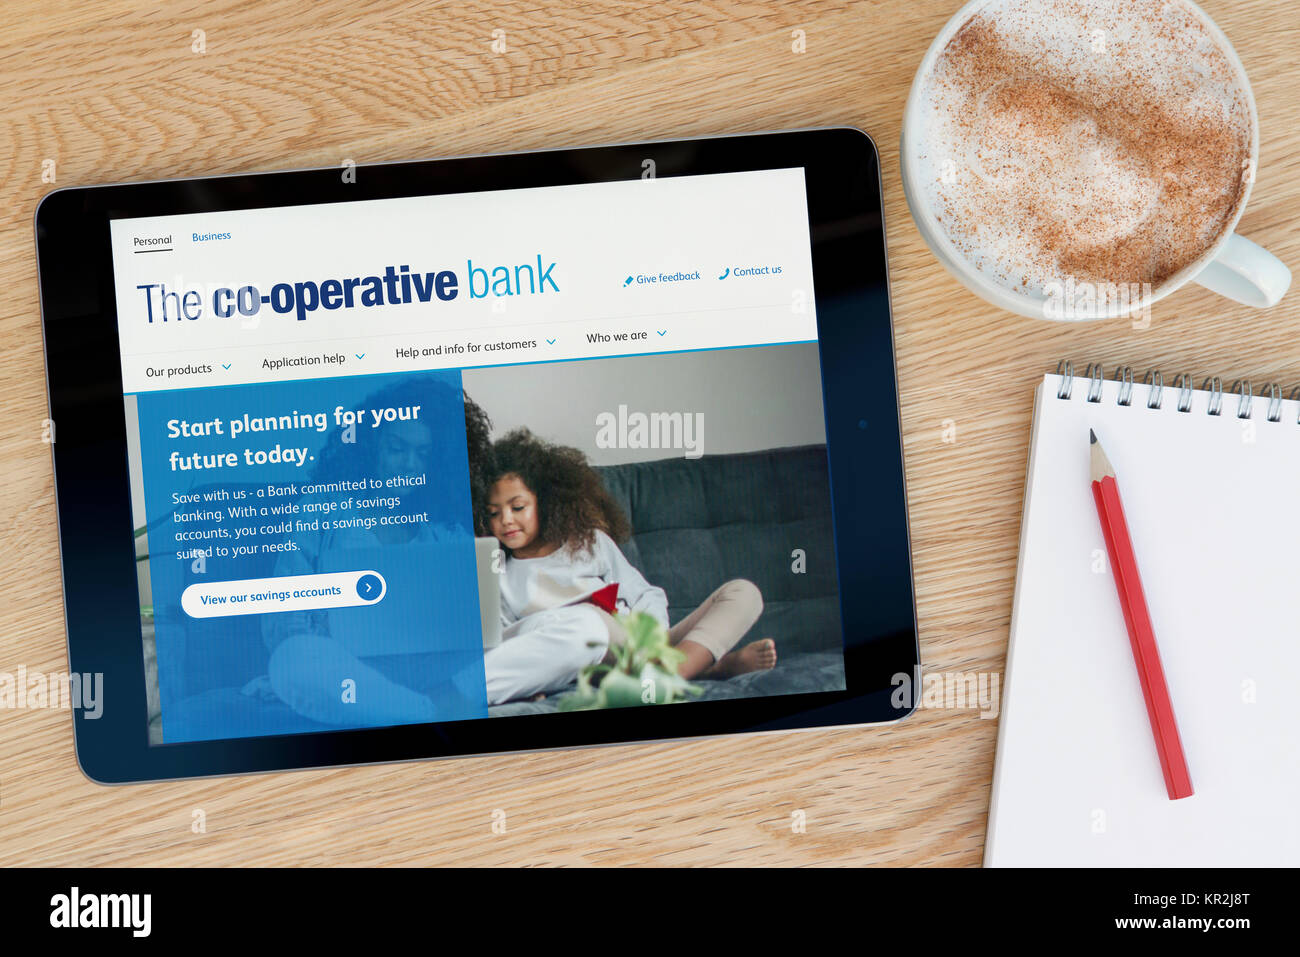 La cooperativa bancaria sitio web en un dispositivo tablet iPad que descansa sobre una mesa de madera junto a un bloc de notas y lápiz y una taza de café (Editorial) Foto de stock